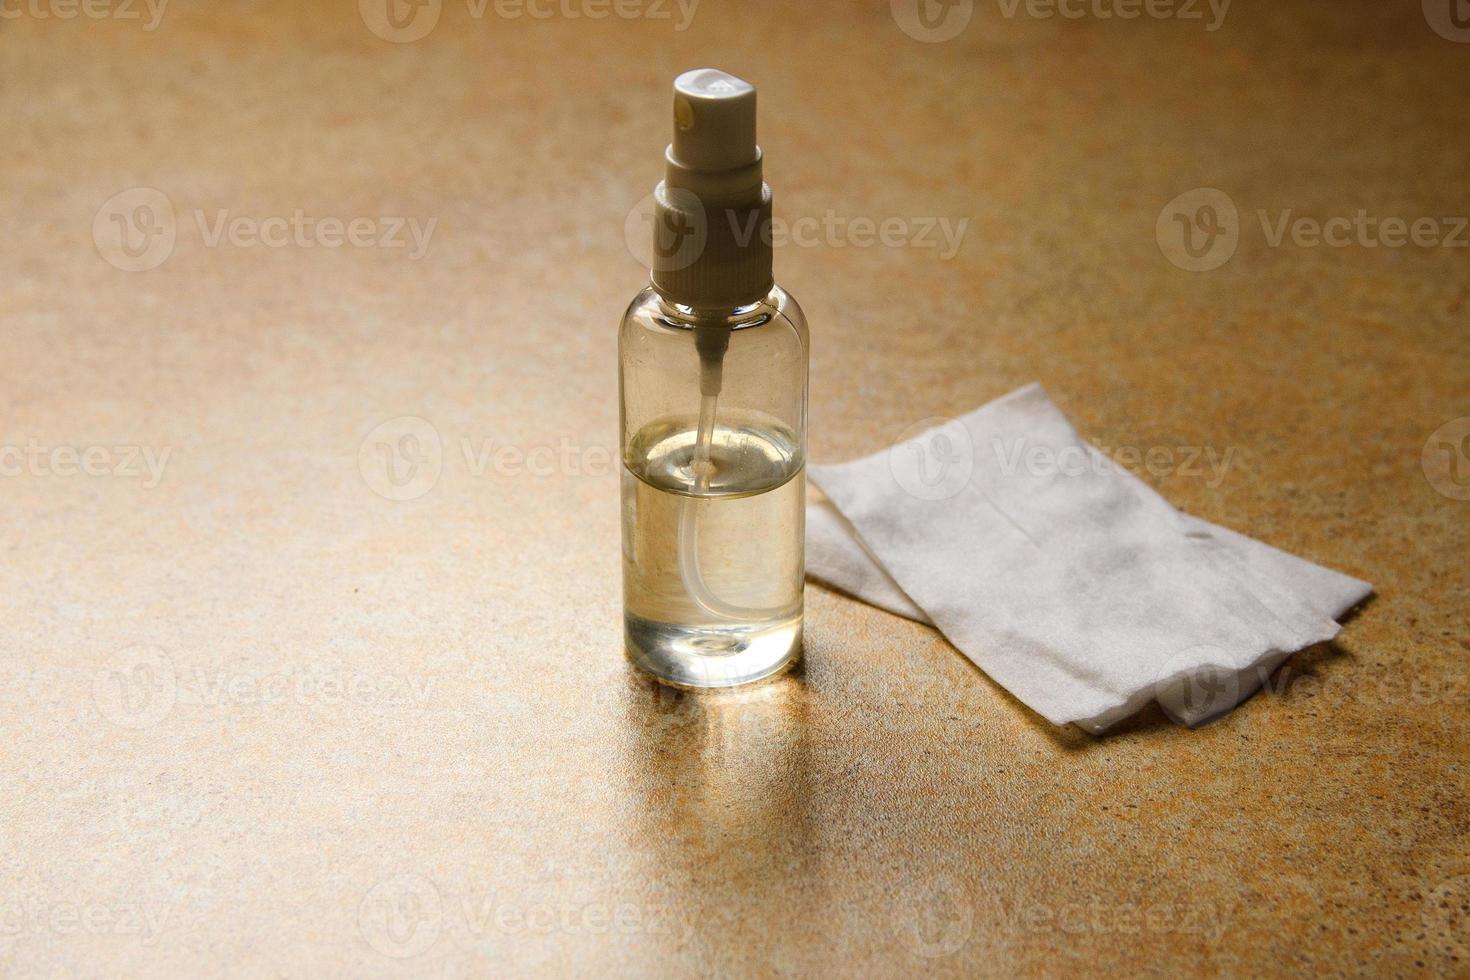 handspray antiseptisch voor desinfectie van handen tegen virussen en bacteriën foto